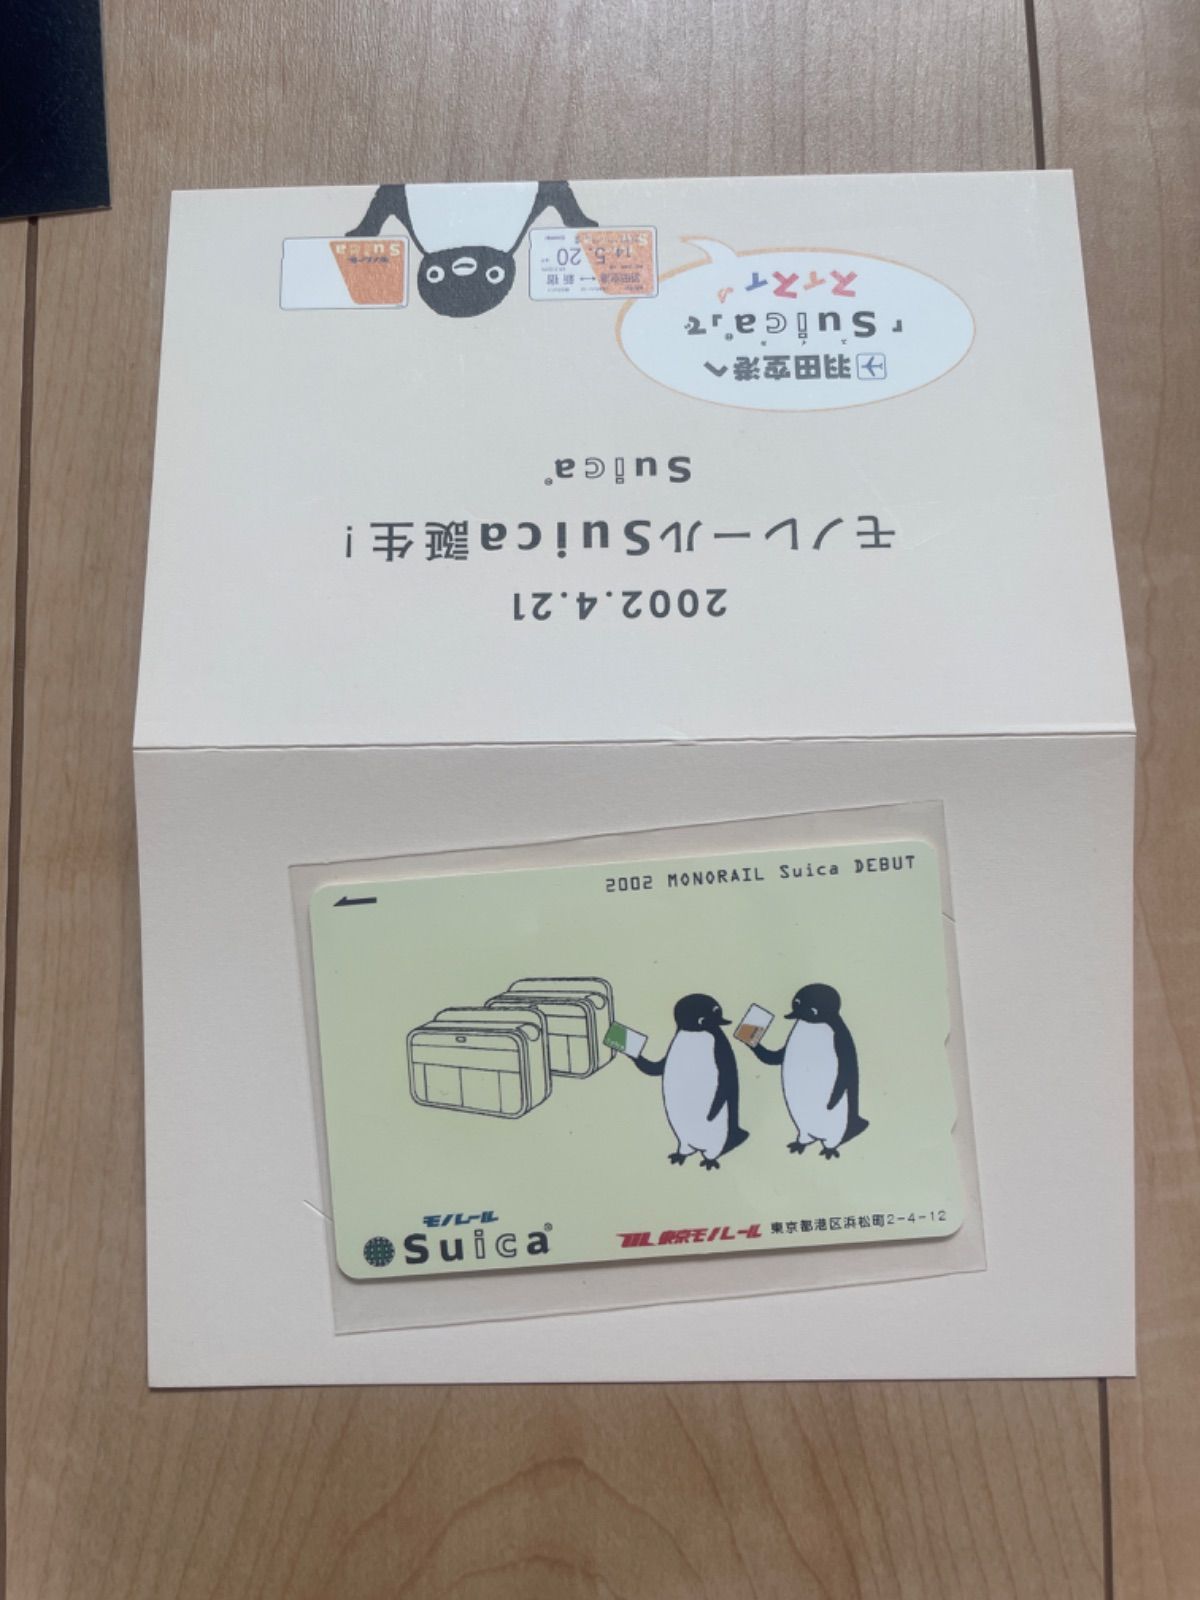 激安先着 2002 東京モノレール記念Suica 使用可能 7102.20円 その他